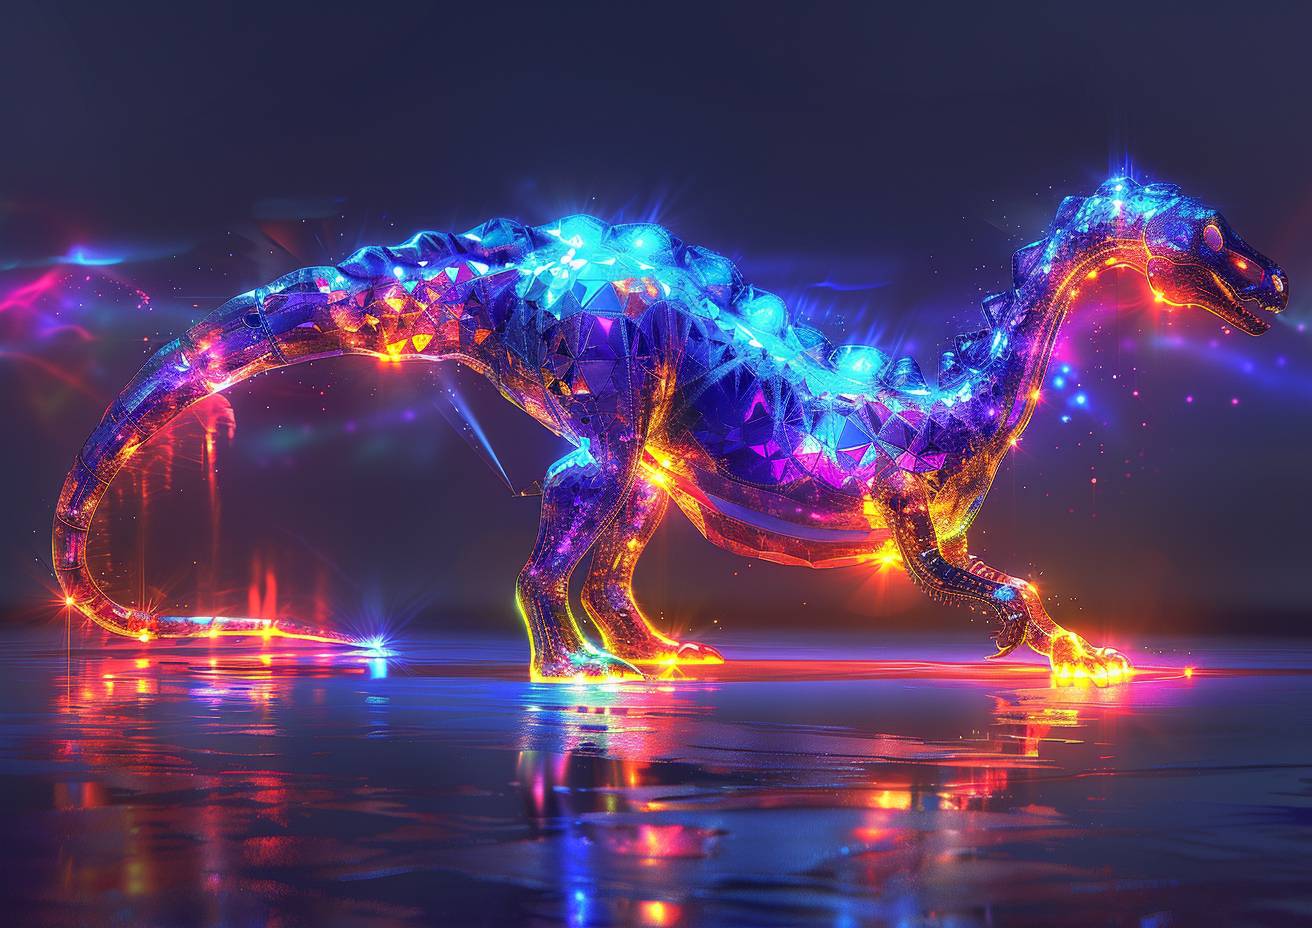 宝石箱恐竜の幻想的なフリーハンドスケッチ、光の屈折、コントラスト、輝かしい色彩、強い視覚的流れ